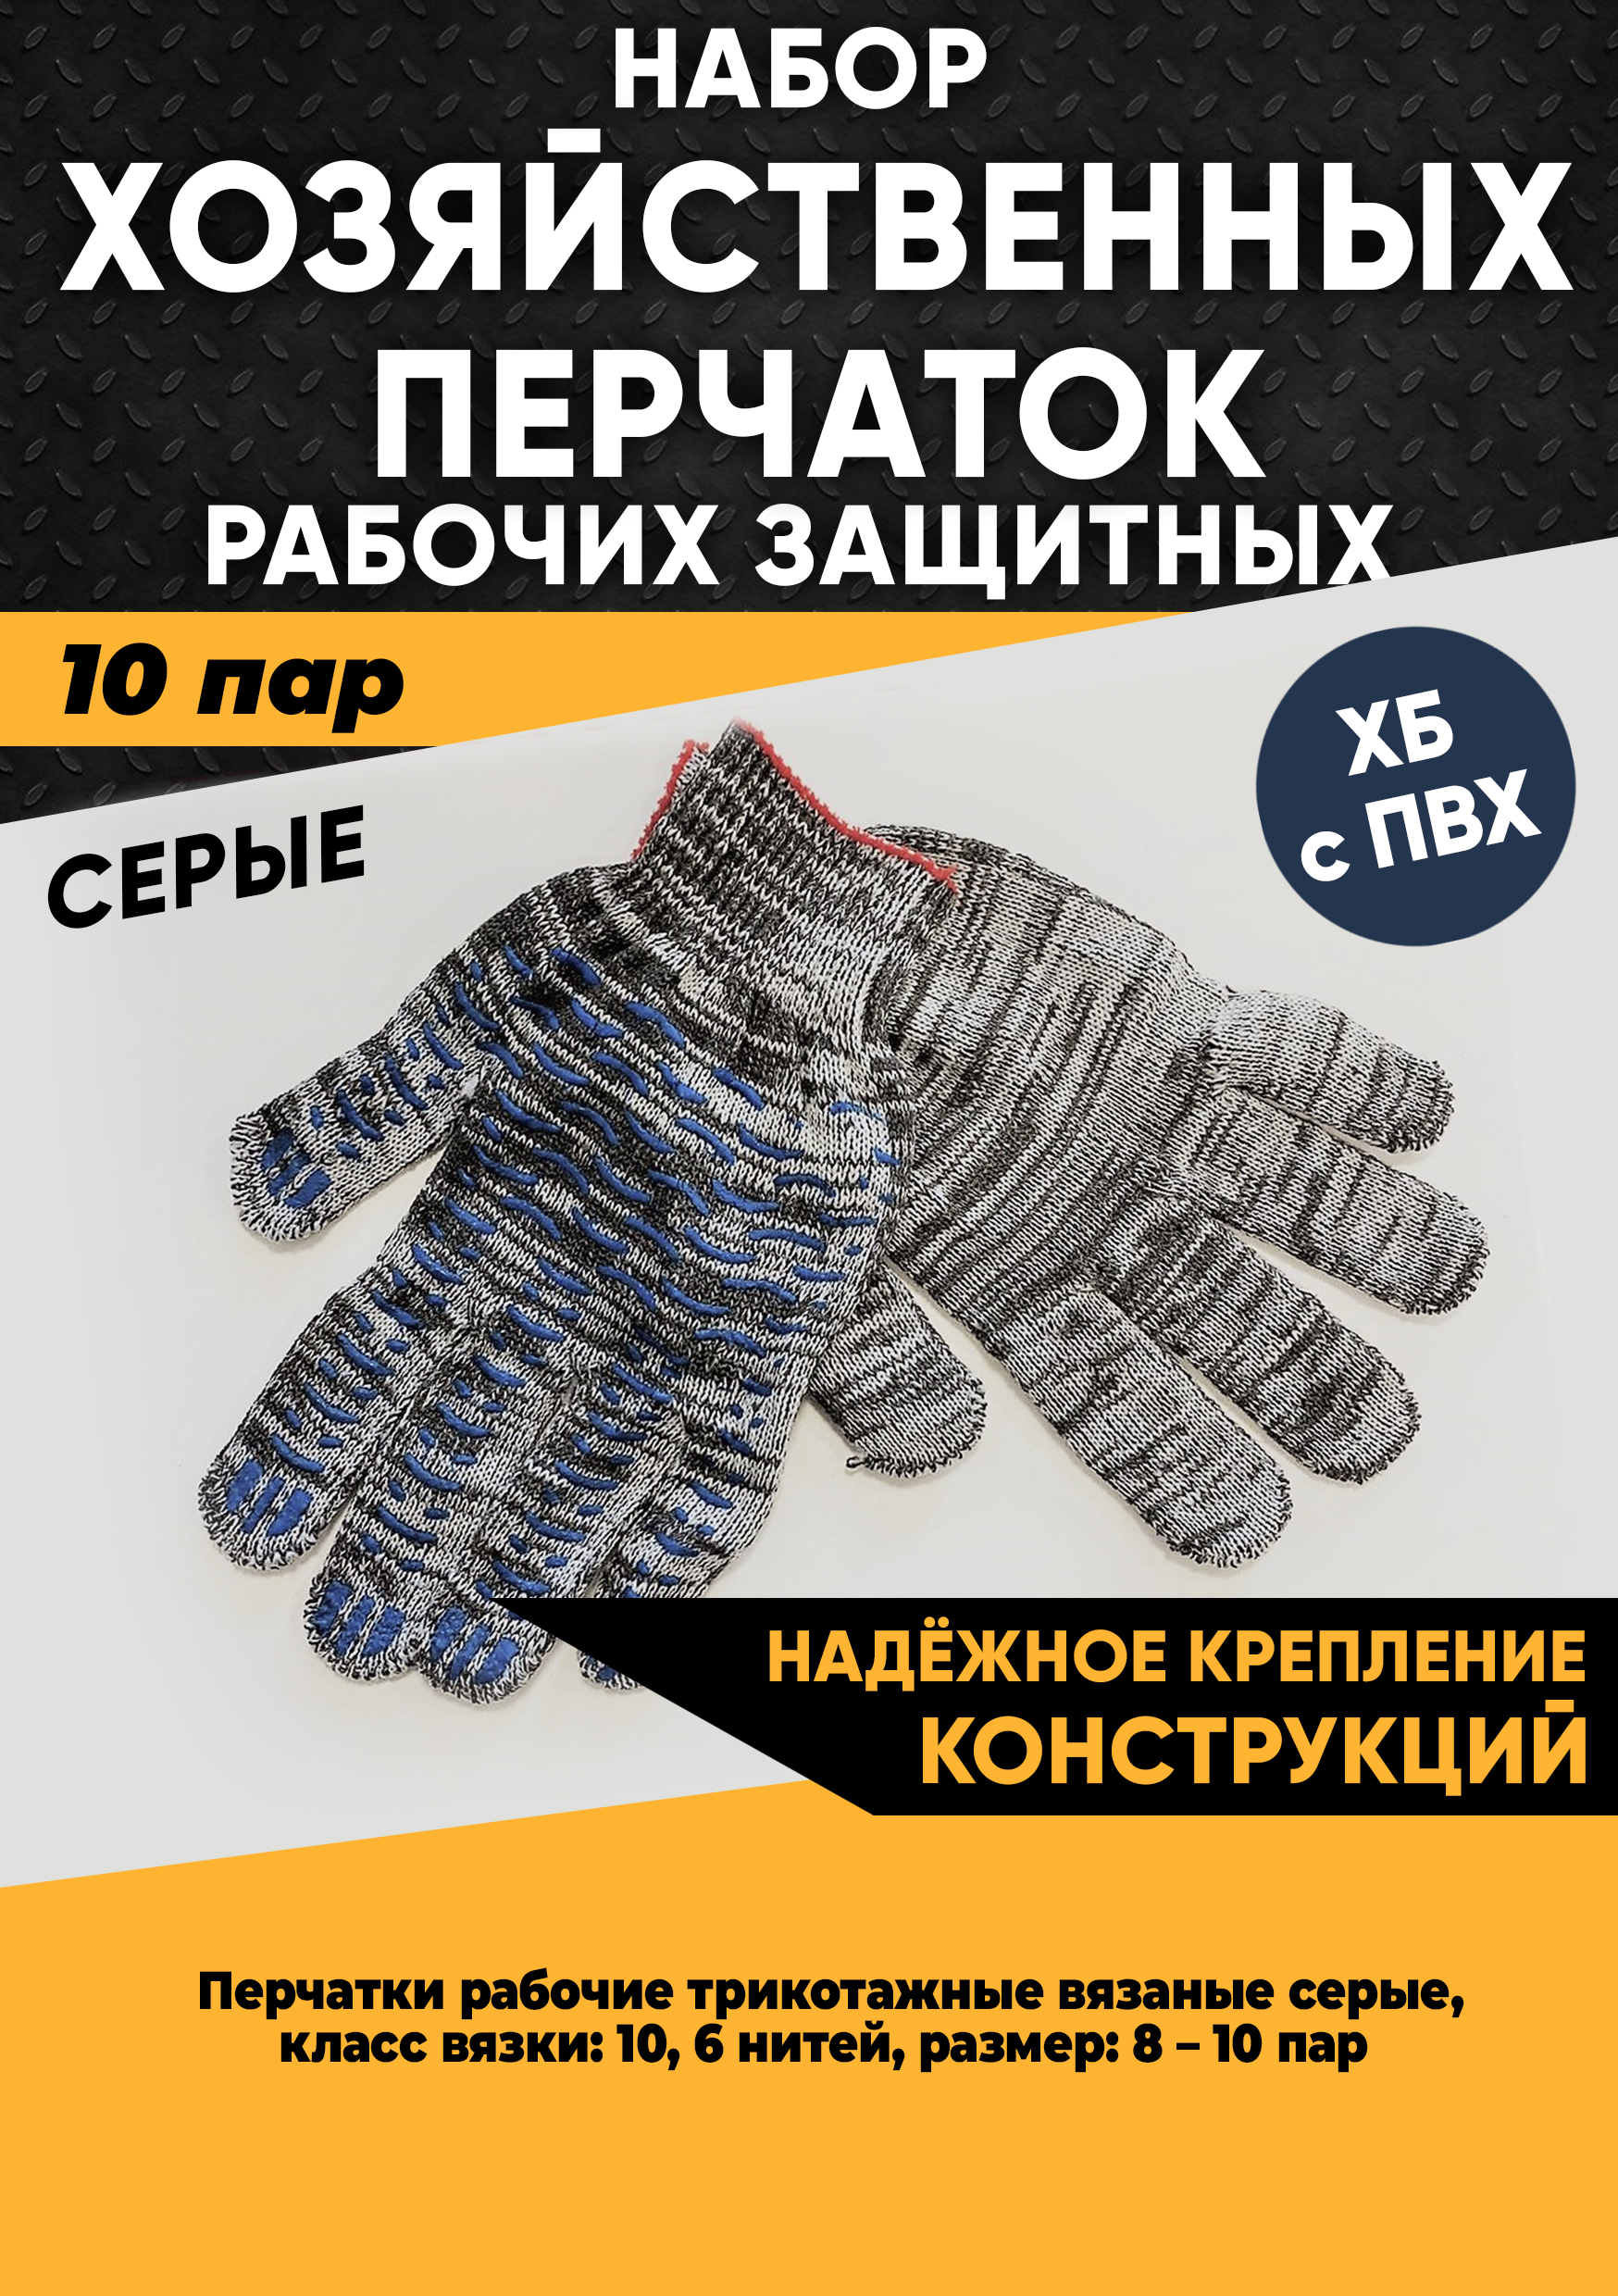 Хозяйственные перчатки KraSimall рабочие защитные ХБ с ПВХ, 6 нитей, серые, 10 пар, 100265 защитные рабочие перчатки sapset